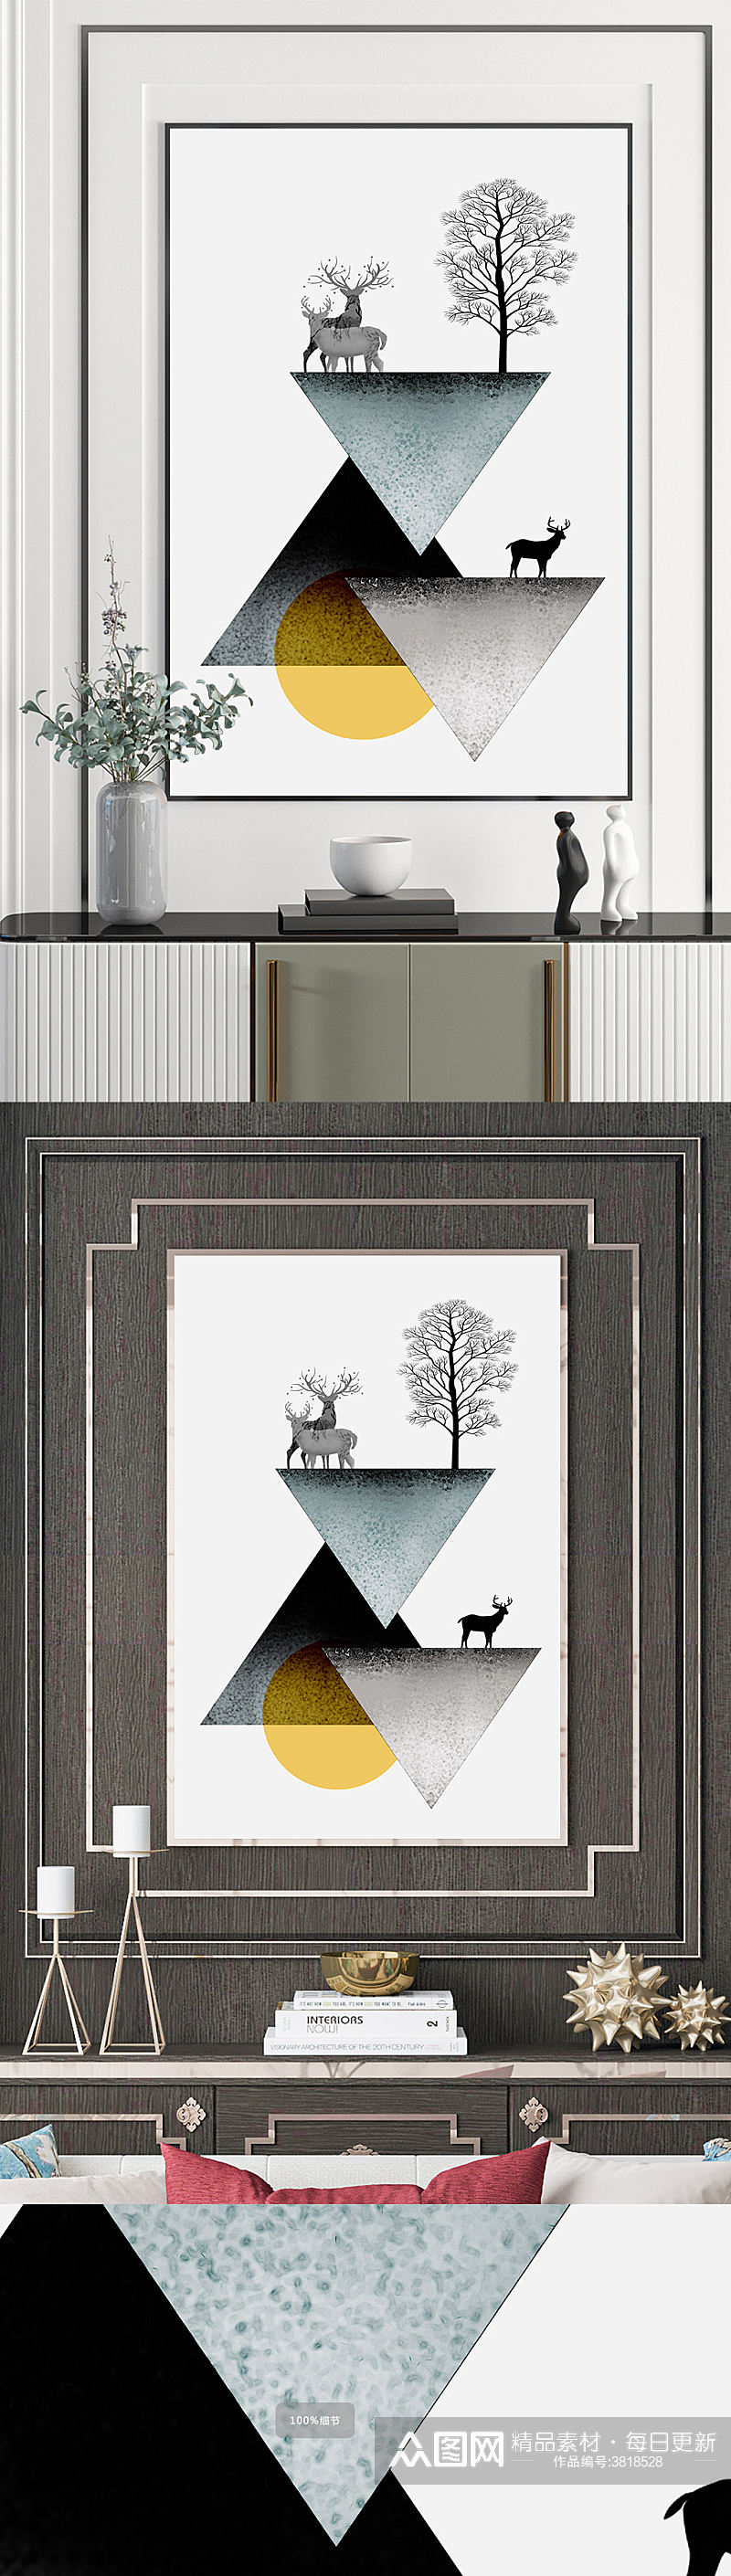 北欧森林风景抽象现代简约麋鹿北欧装饰画素材